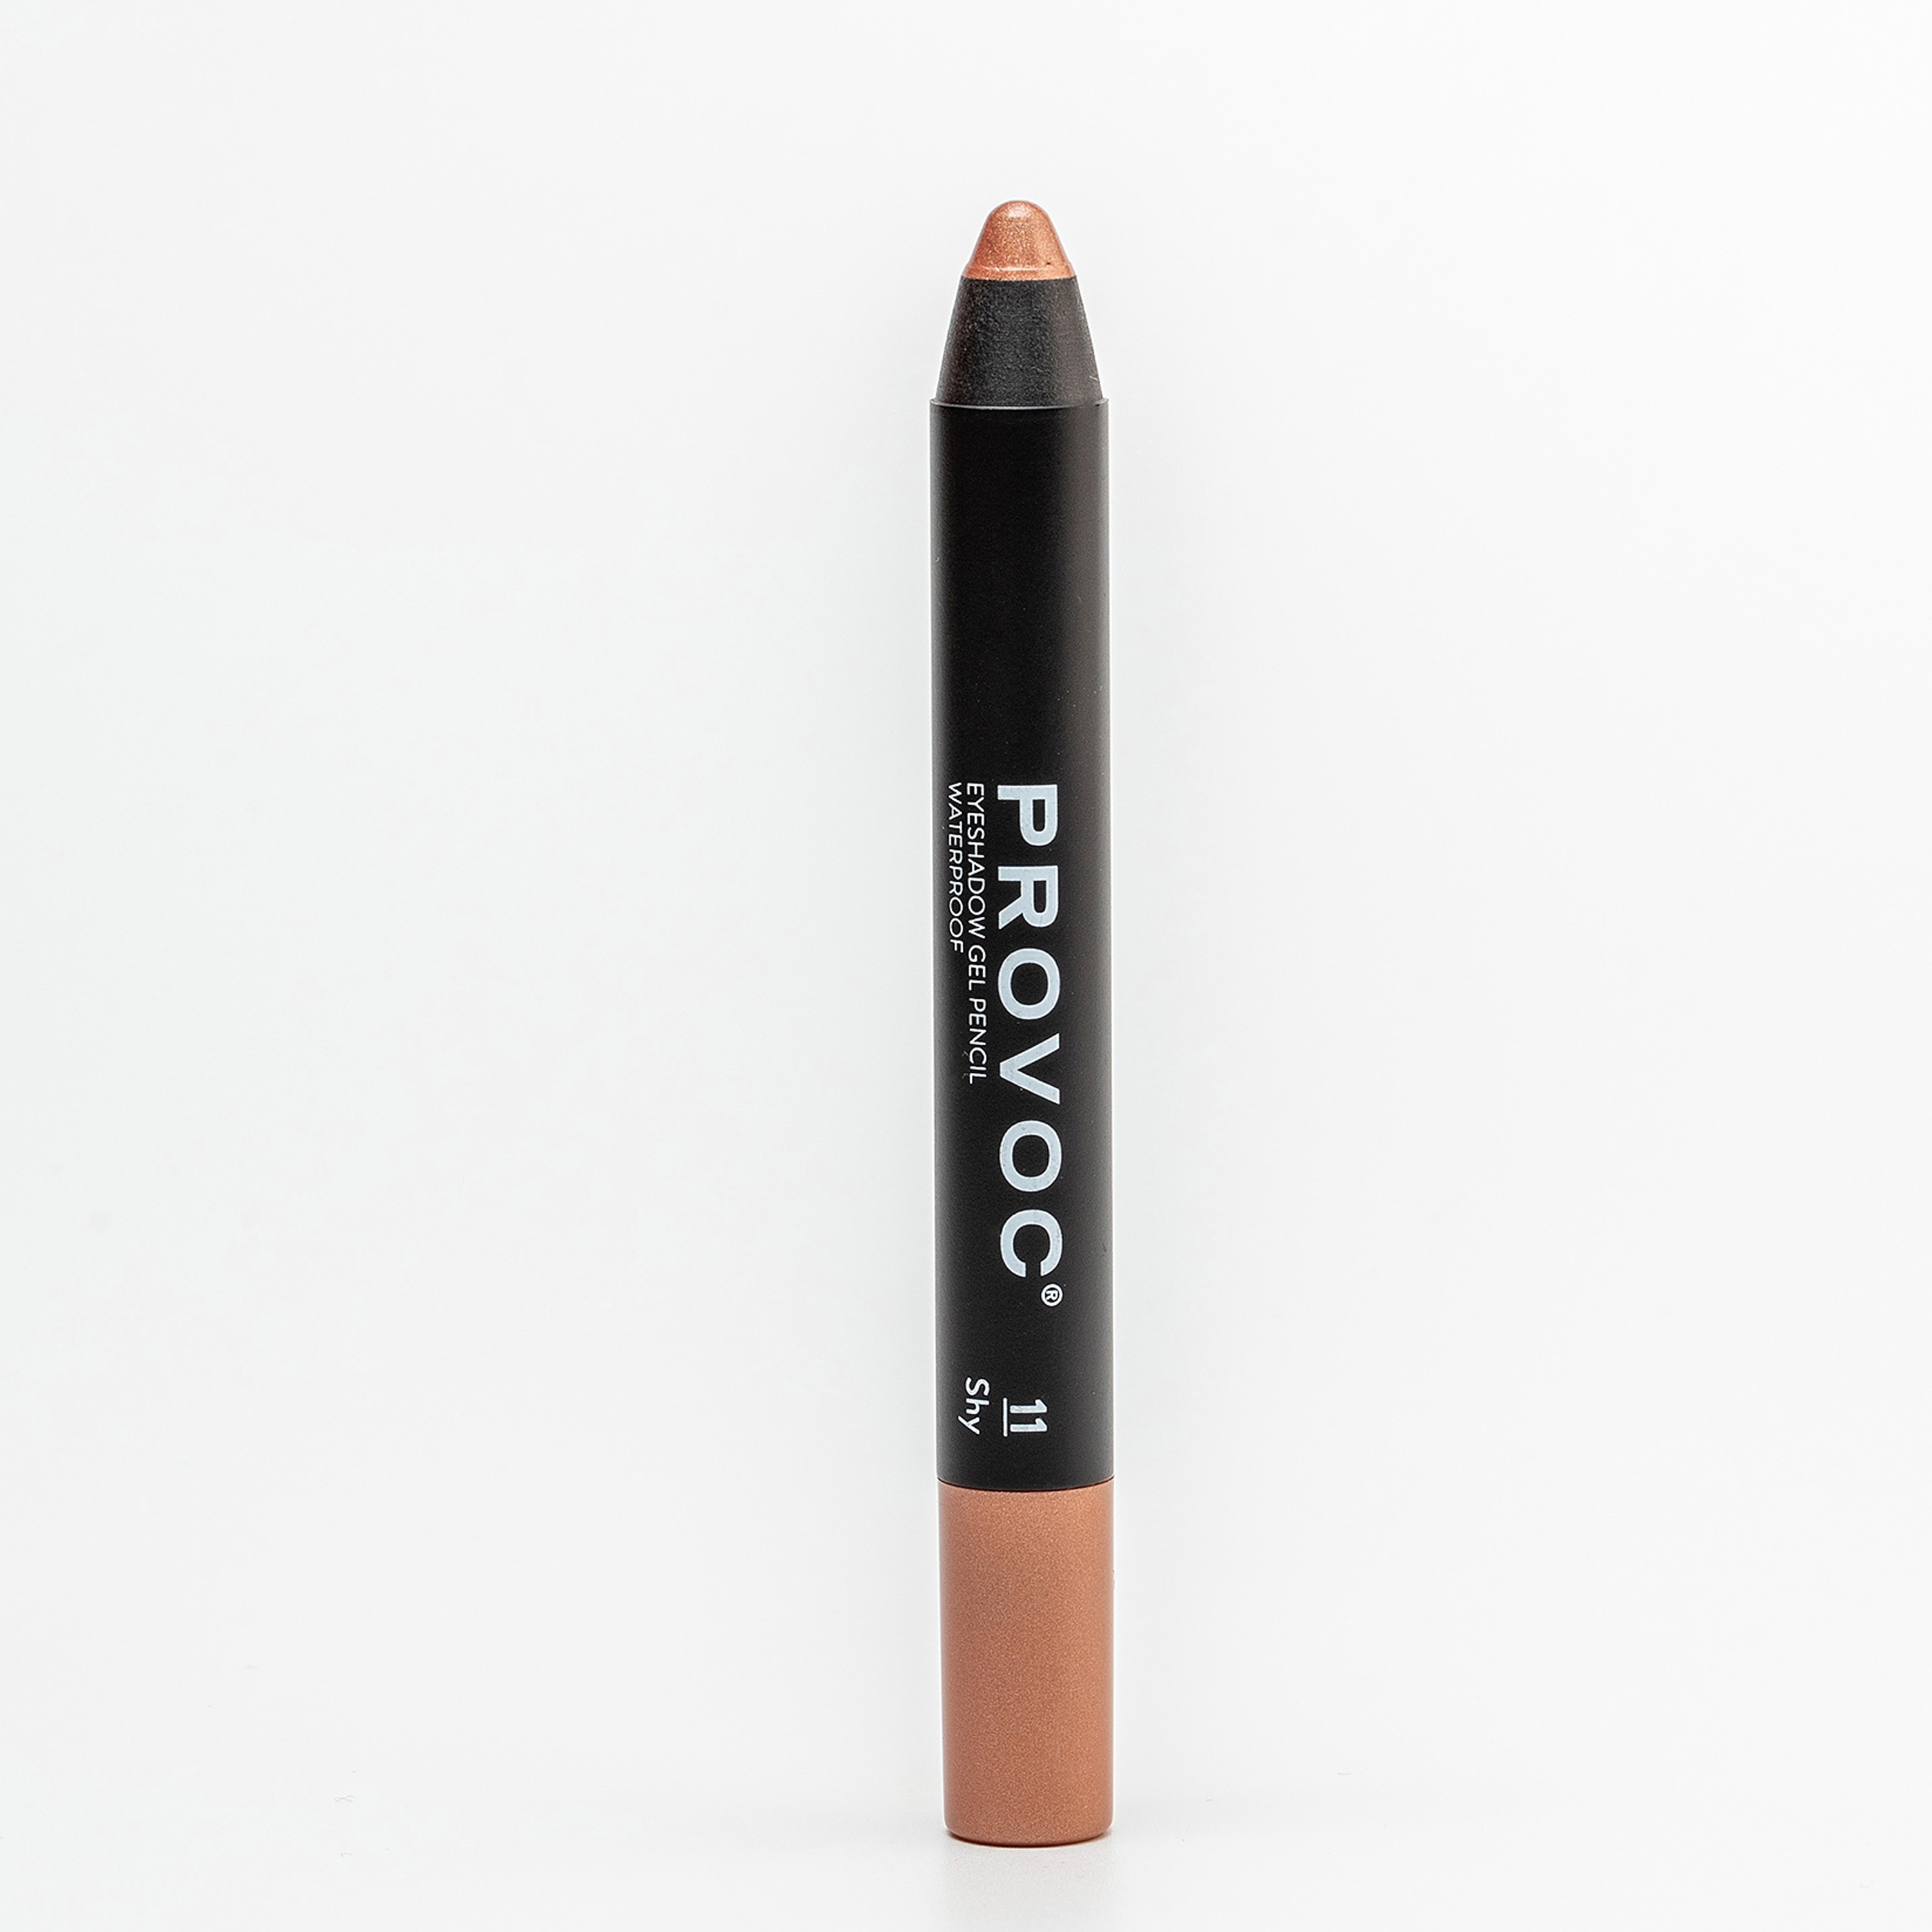 Тени-карандаш PROVOC Eyeshadow Pencil L водостойкие, шиммер 11 персиковый, 2,3 г тени карандаш водостойкие eyeshadow pencil pvep10 10 оливковый шиммер 1 шт